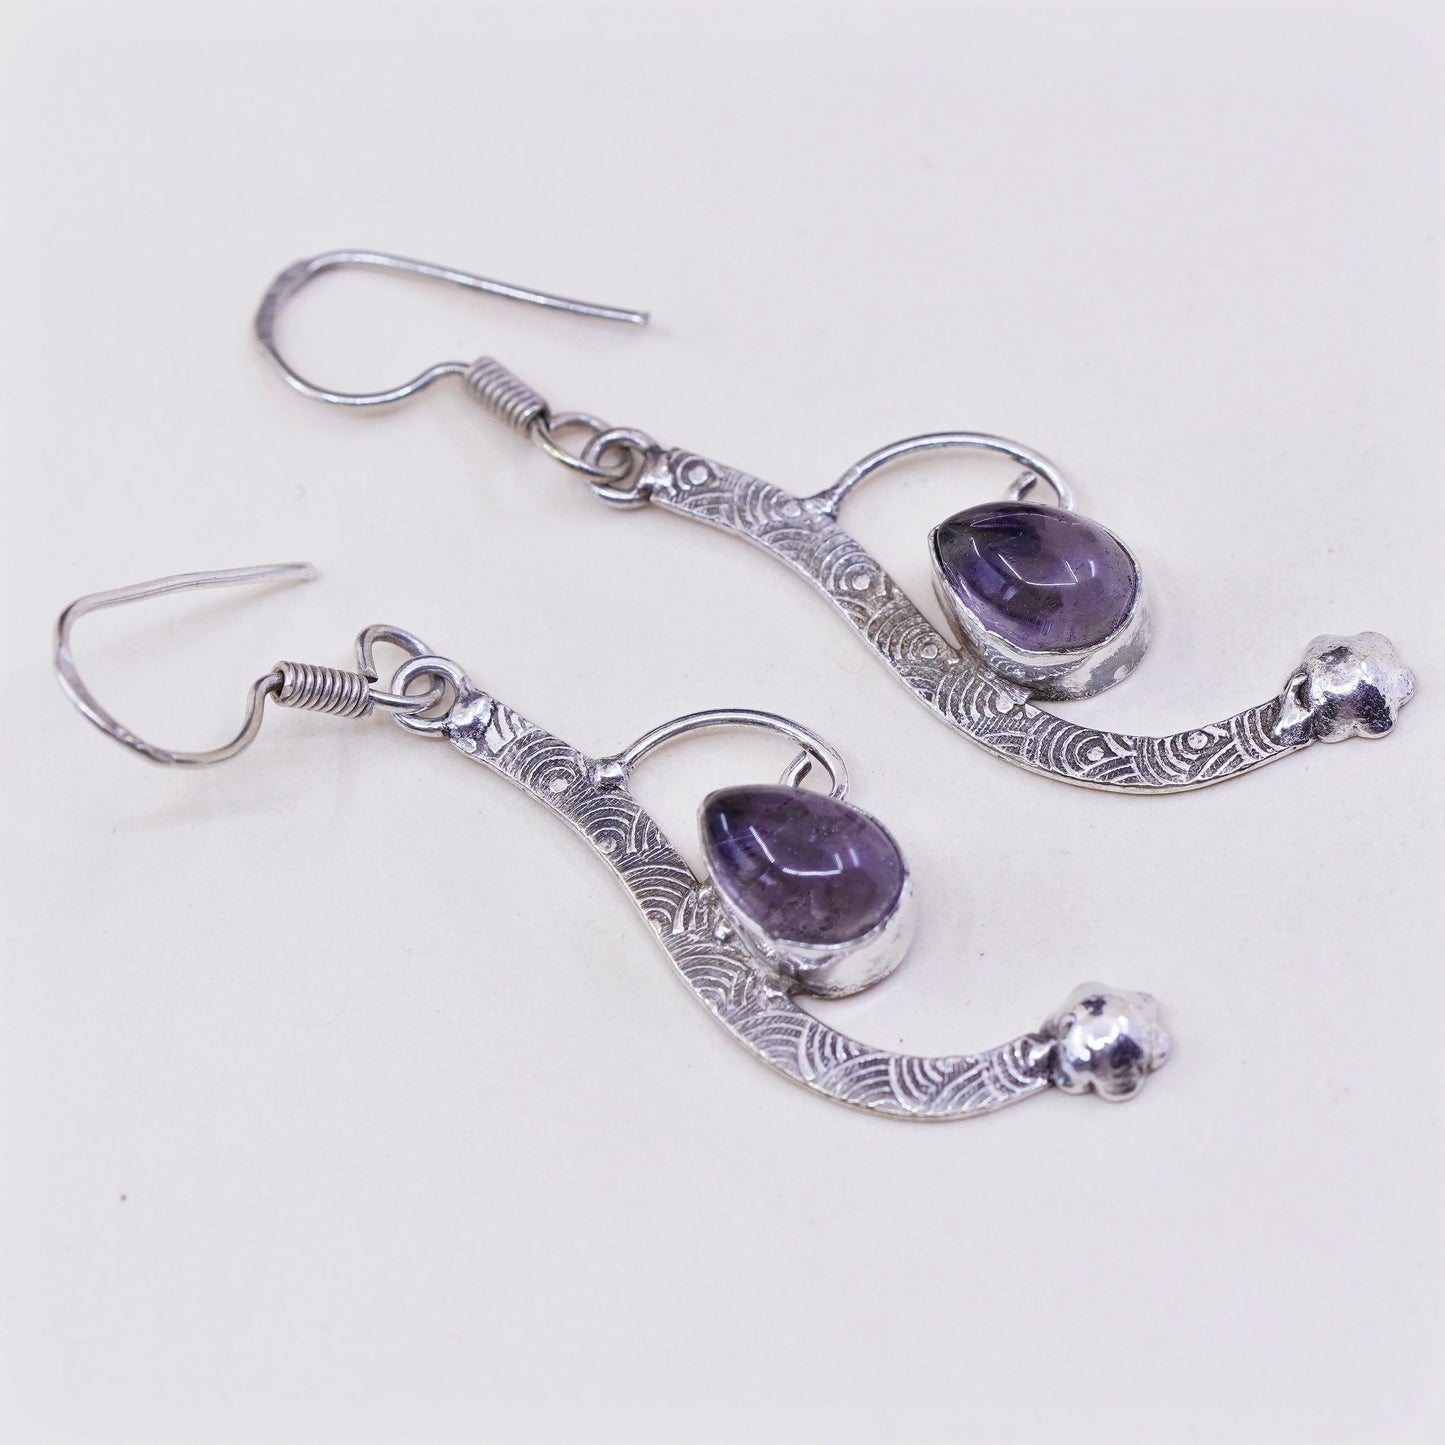 Vintage Sterling 925 silver handmade earrings with amethyst teardrops